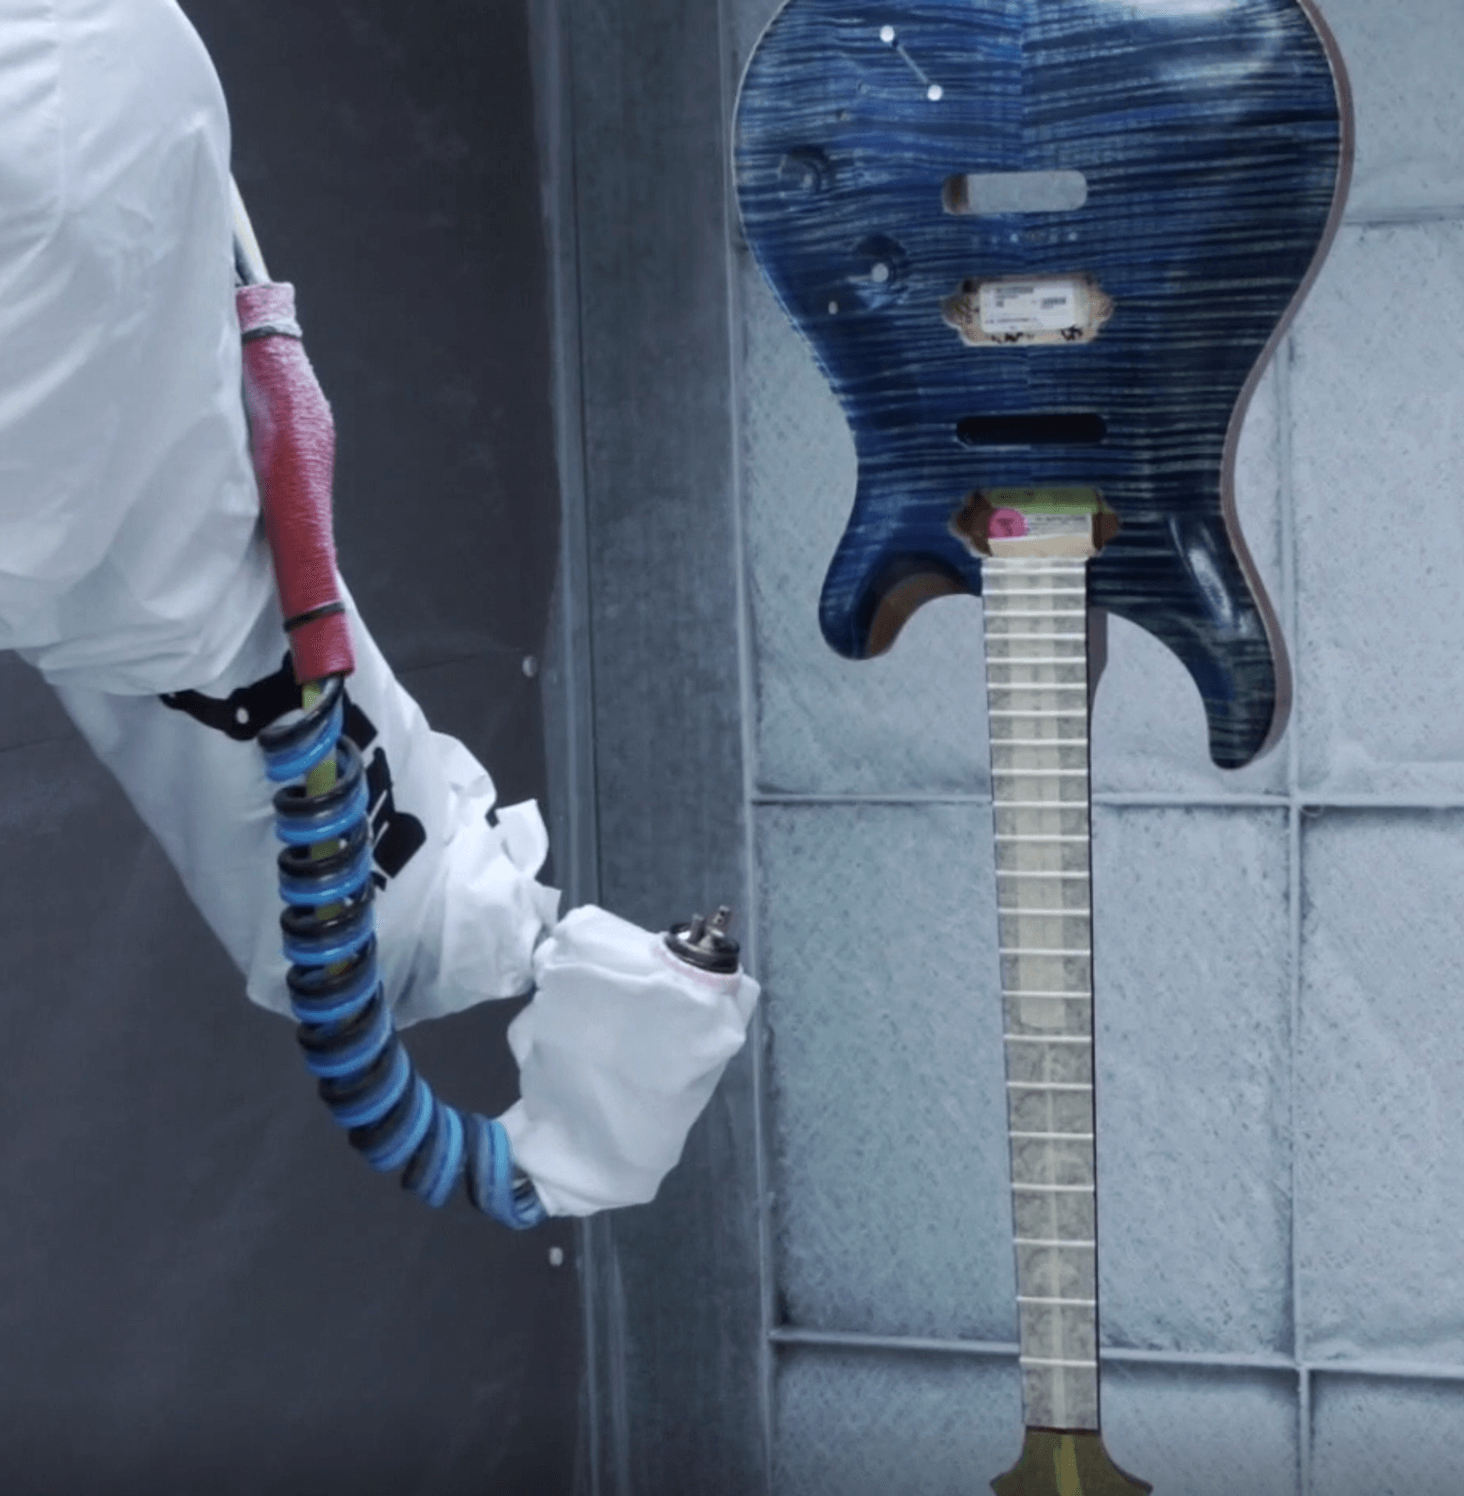 FANUC Robot painting guitar